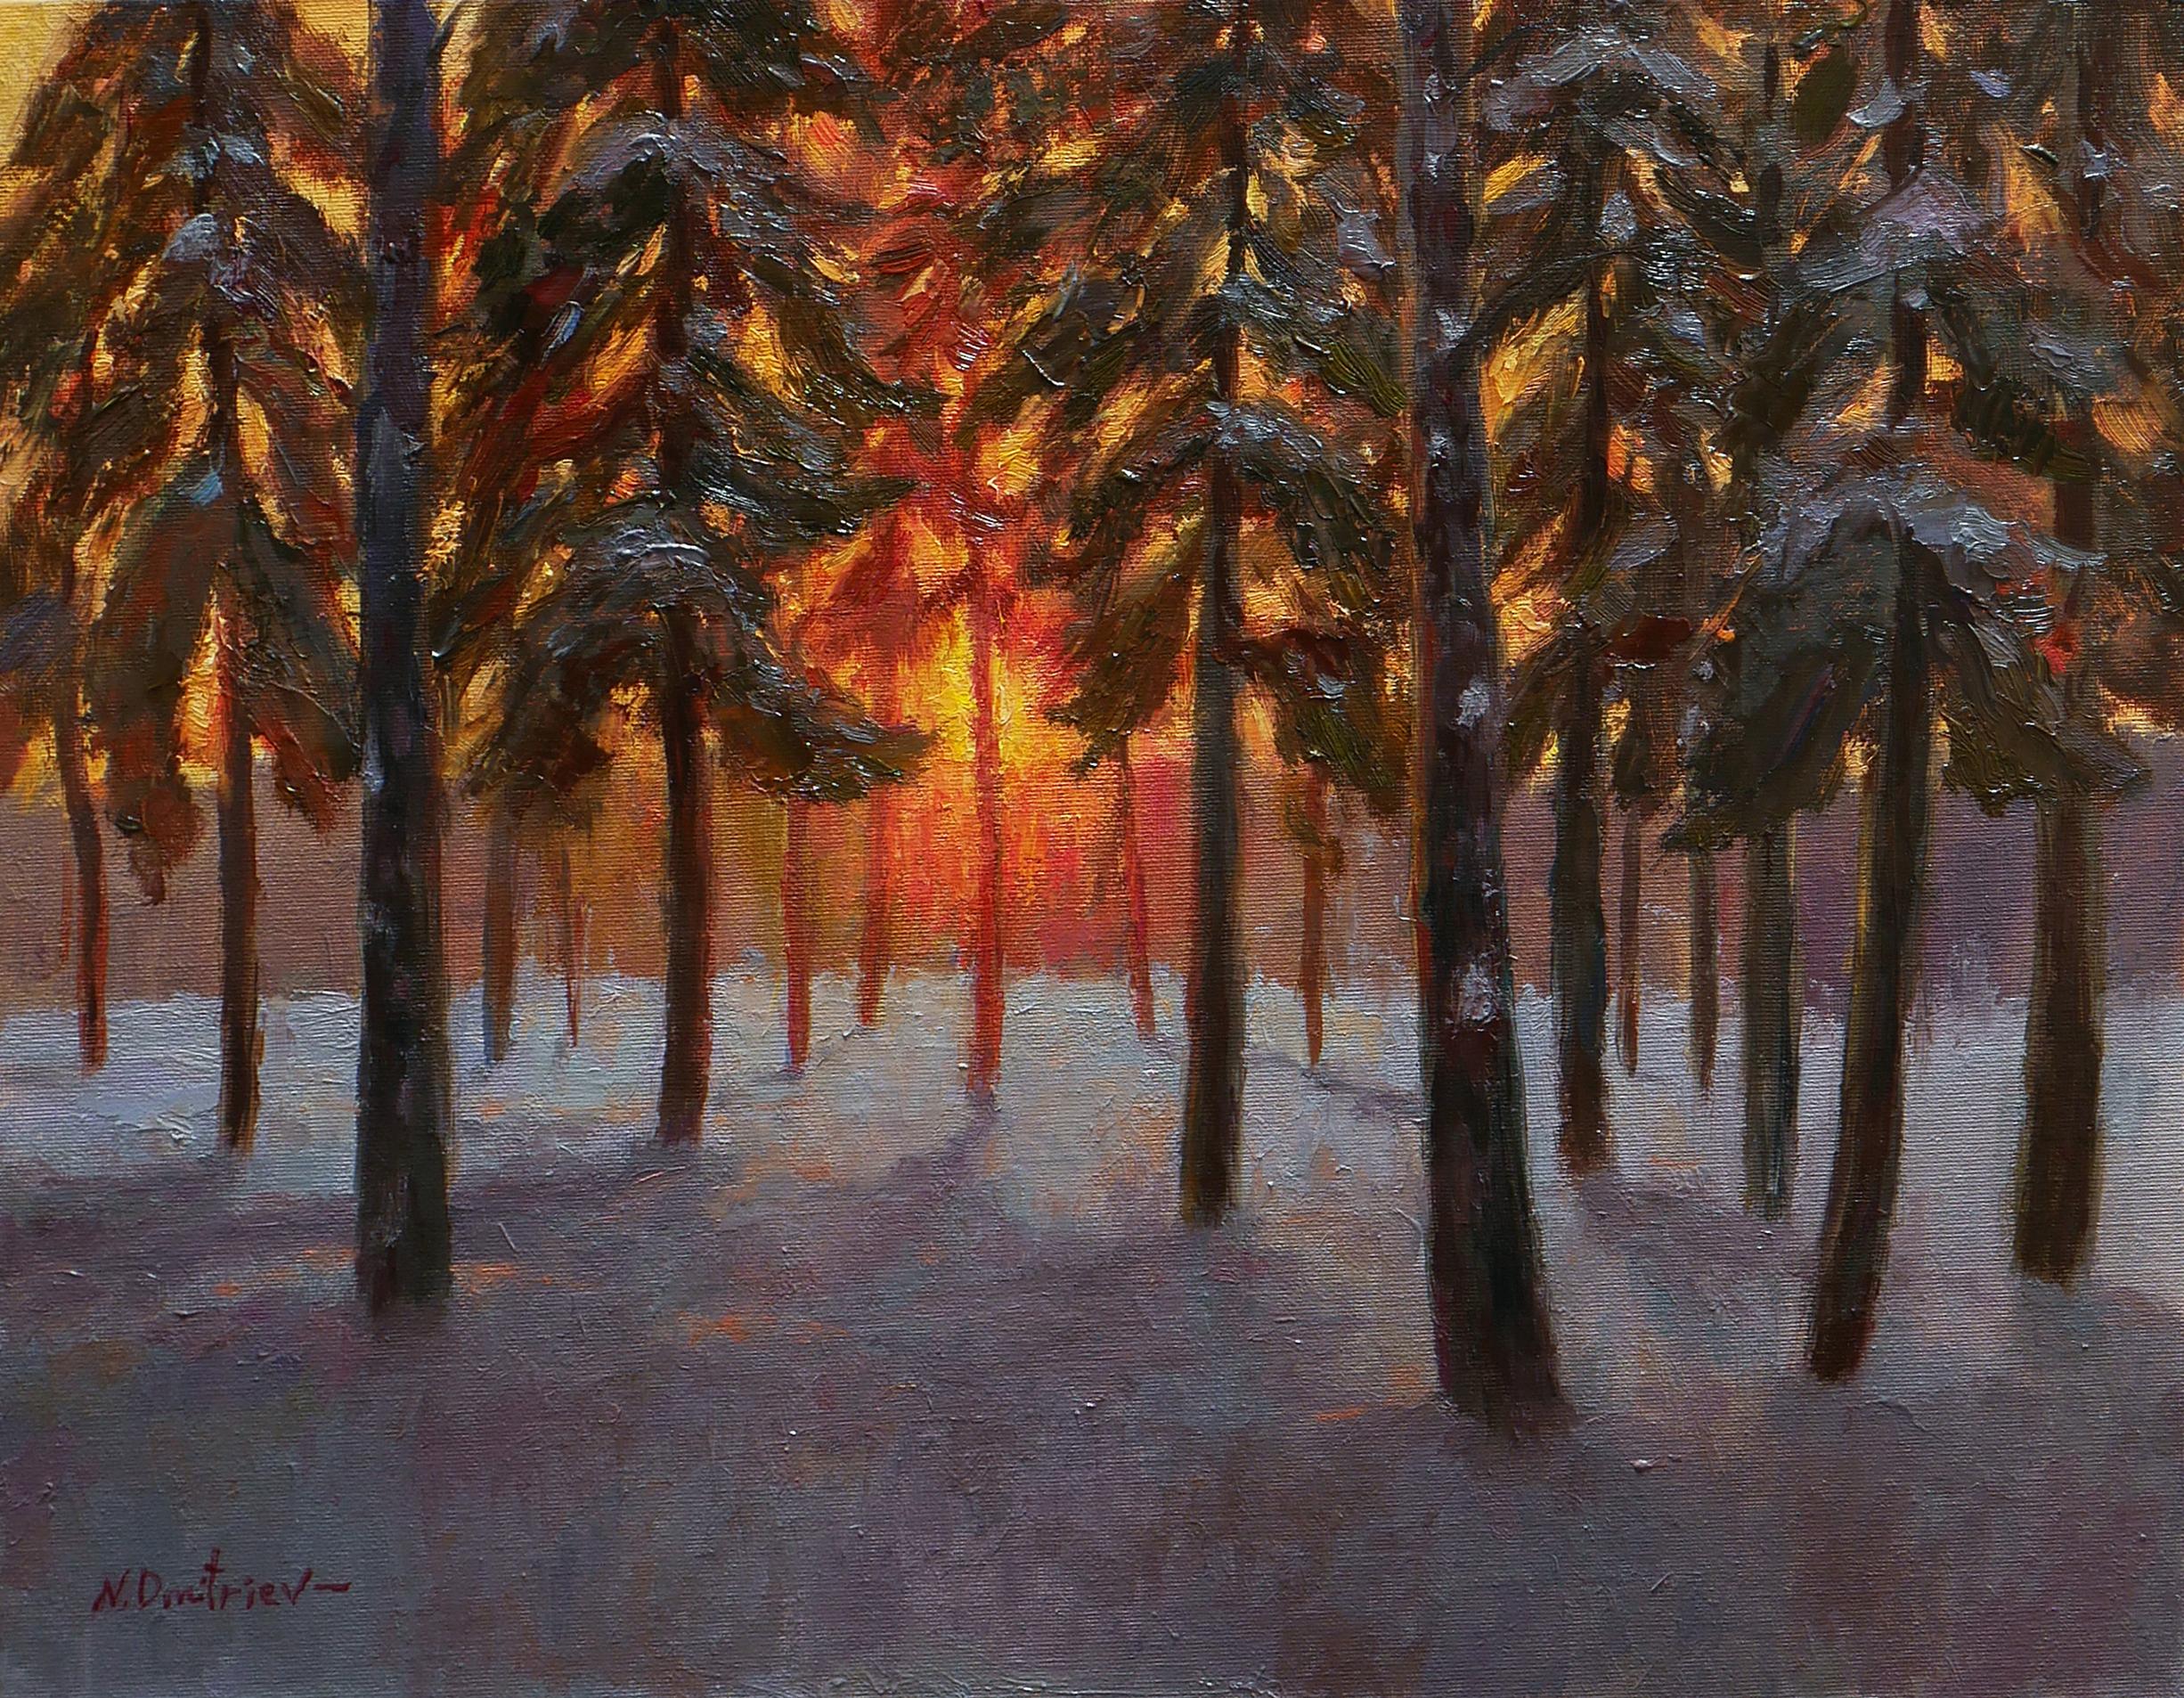 "Le tableau impressionniste d'hiver avec la forêt et le soleil couchant est une belle pièce de décoration murale. La peinture lumineuse est pleine de couleurs différentes, et l'artiste capture de manière professionnelle les combinaisons de tons